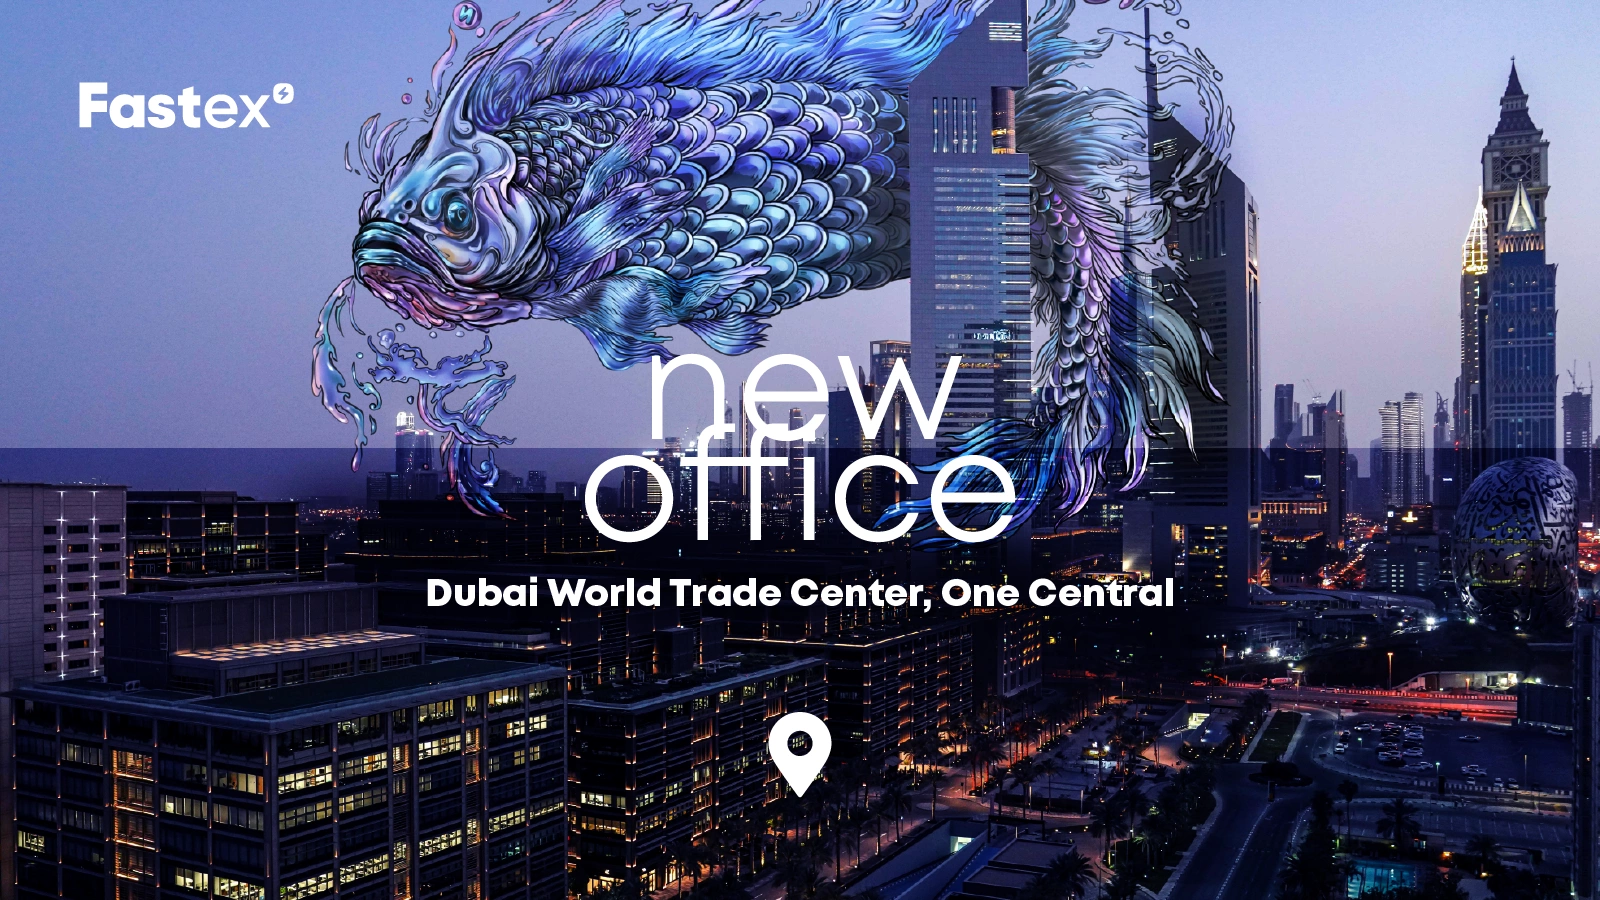 Fastex-ը նոր գրասենյակ է բացել Դուբայի համաշխարհային առևտրի կենտրոնում՝ One Central-ում